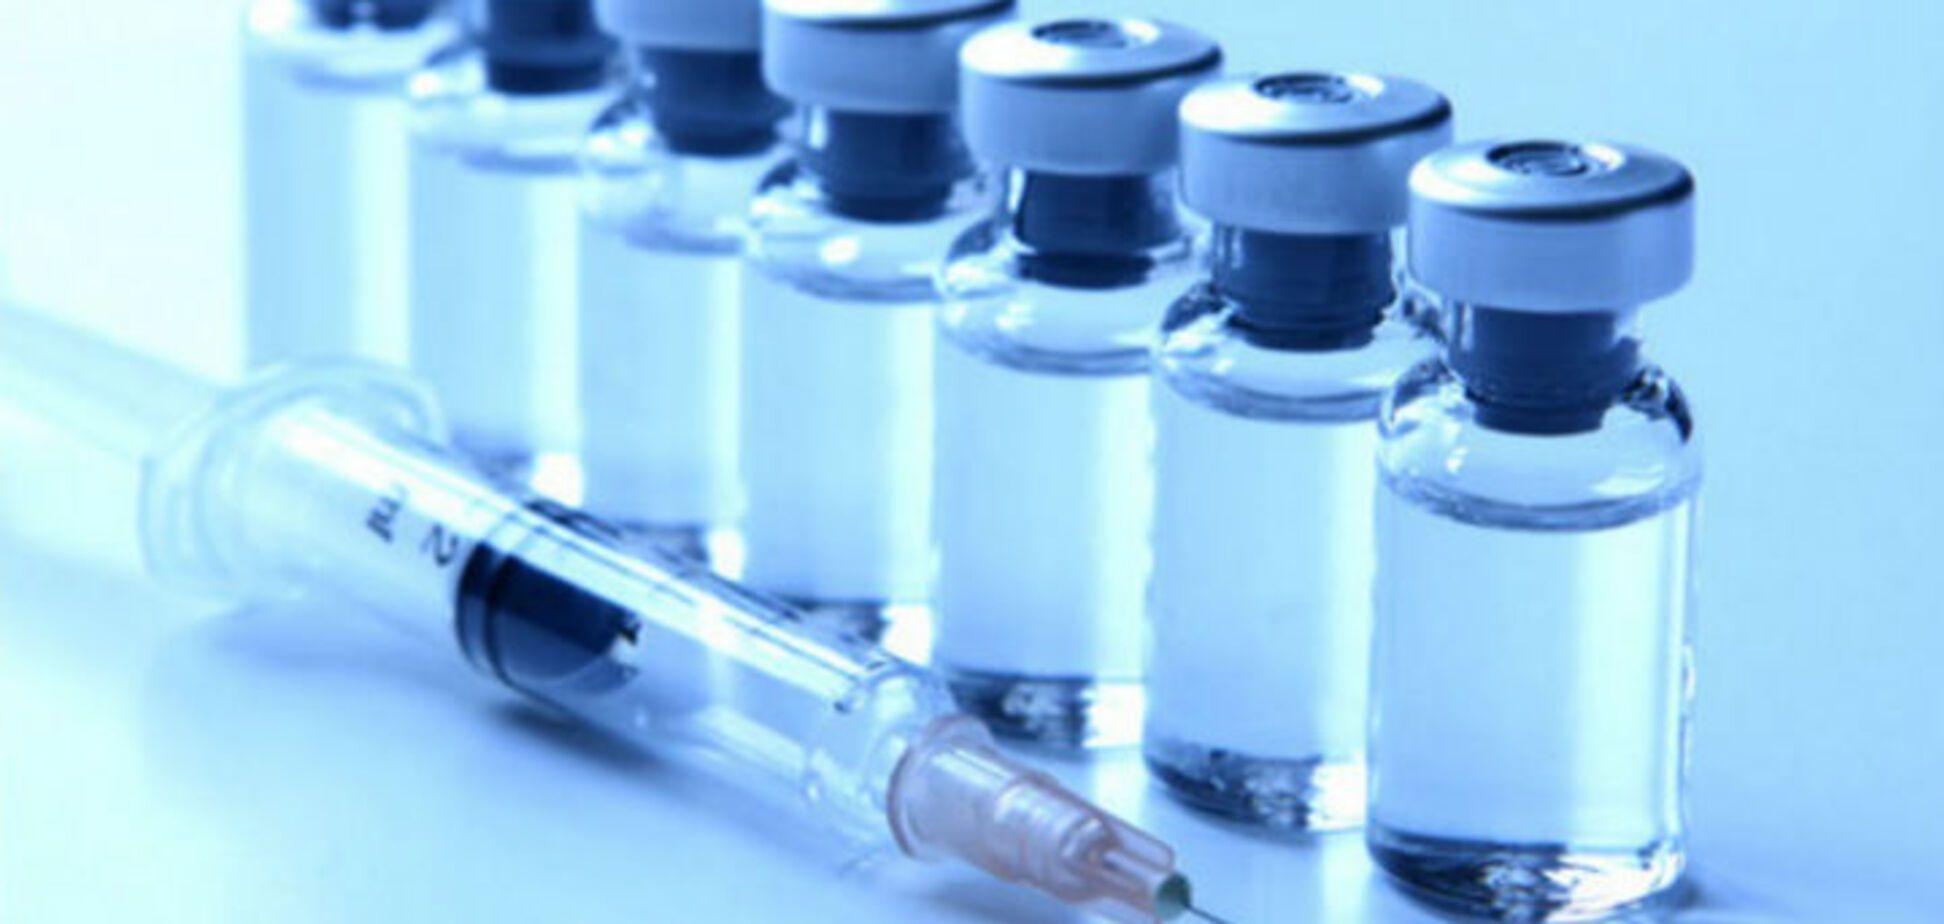 Снова столбняк: Минздрав предупреждает не использовать российские вакцины